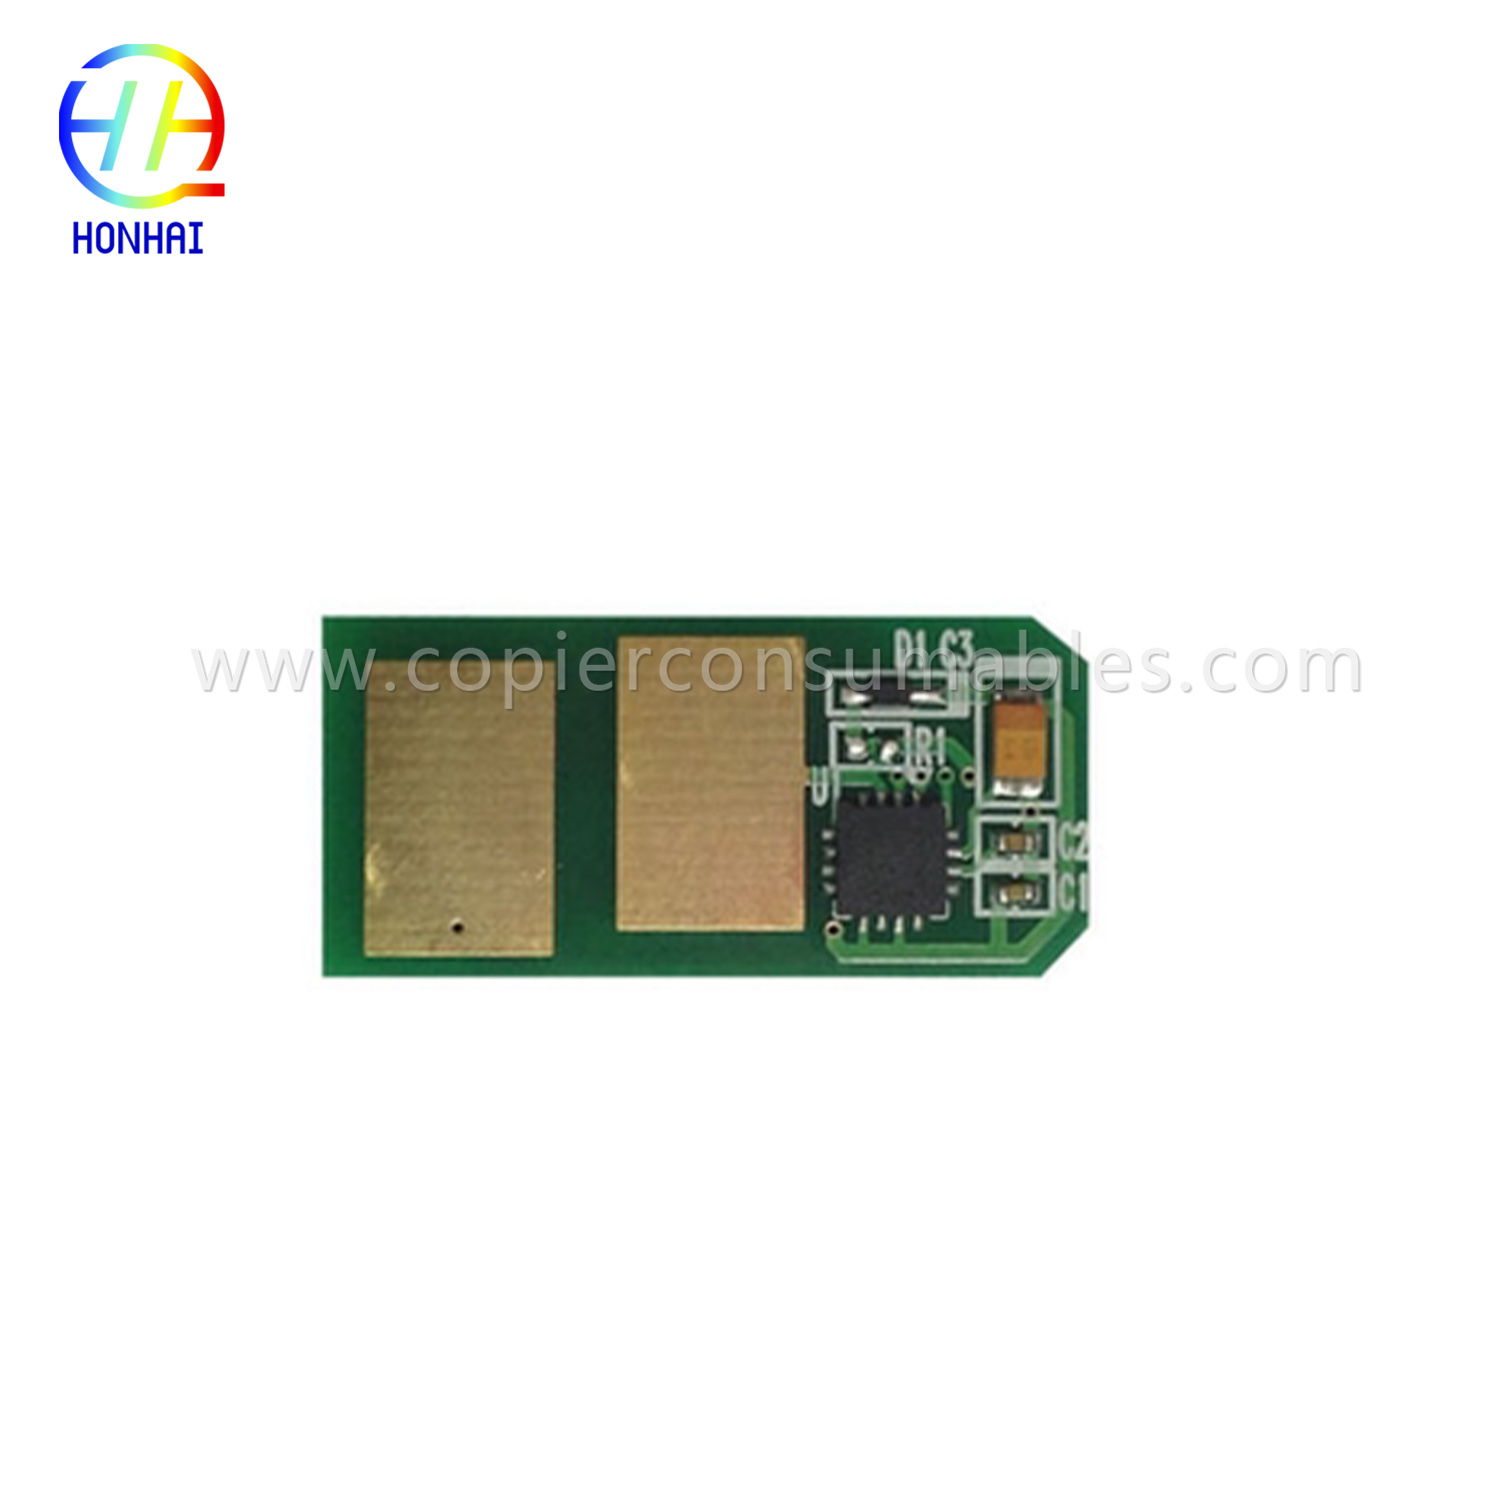 Toner cartridge Chip kanggo Oki C301 C321 1.5K 拷贝